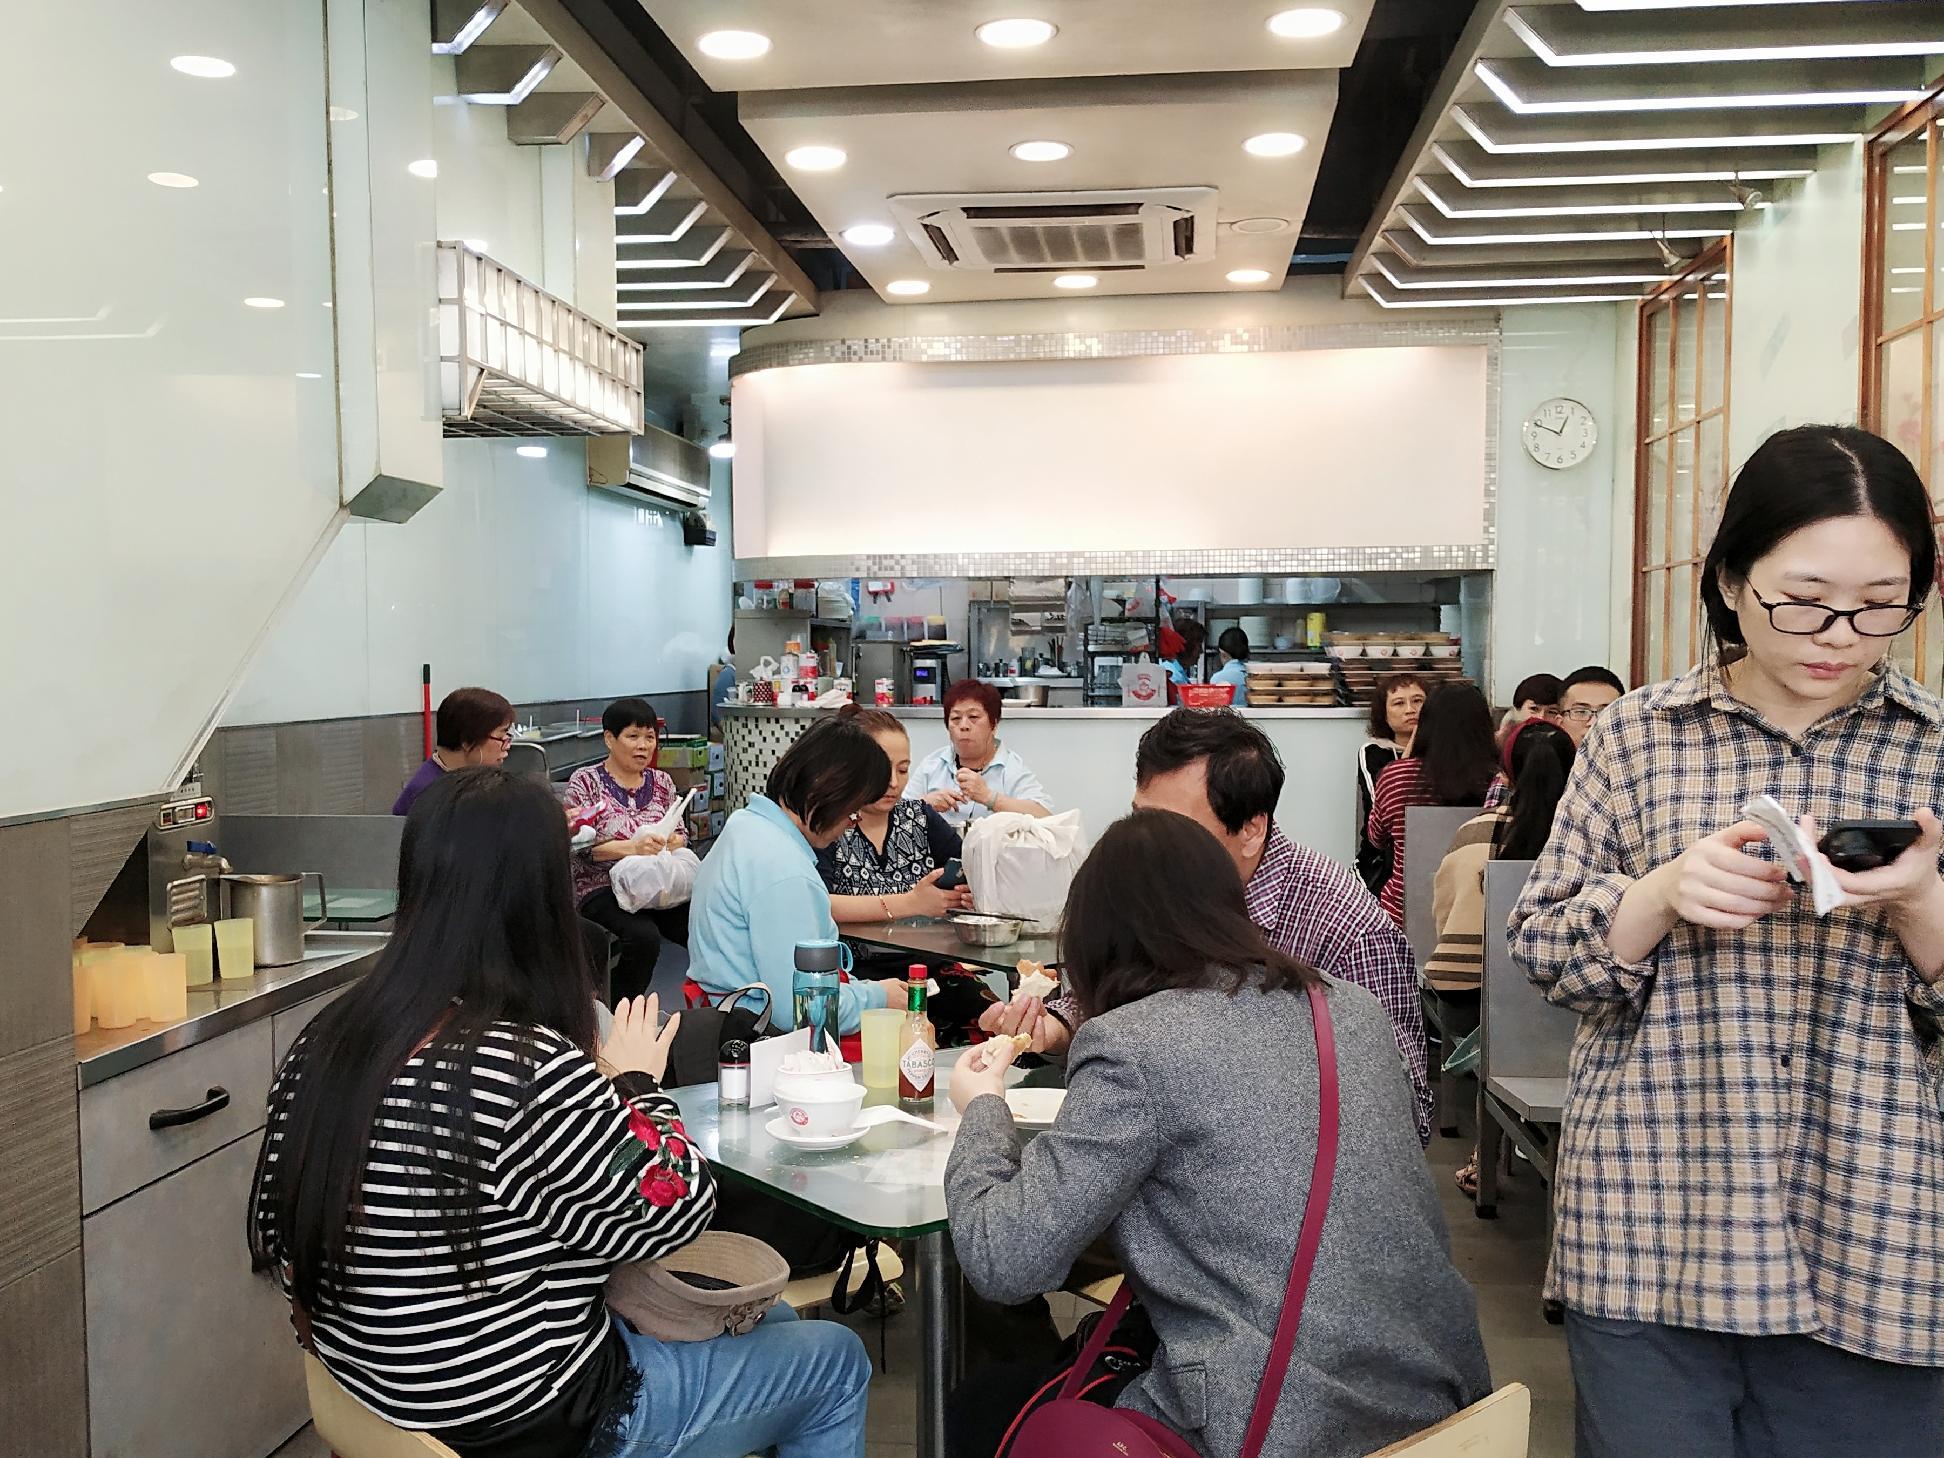 香港取名最有意思的小餐馆,竟以 牛奶公司 命名,澳门也有 